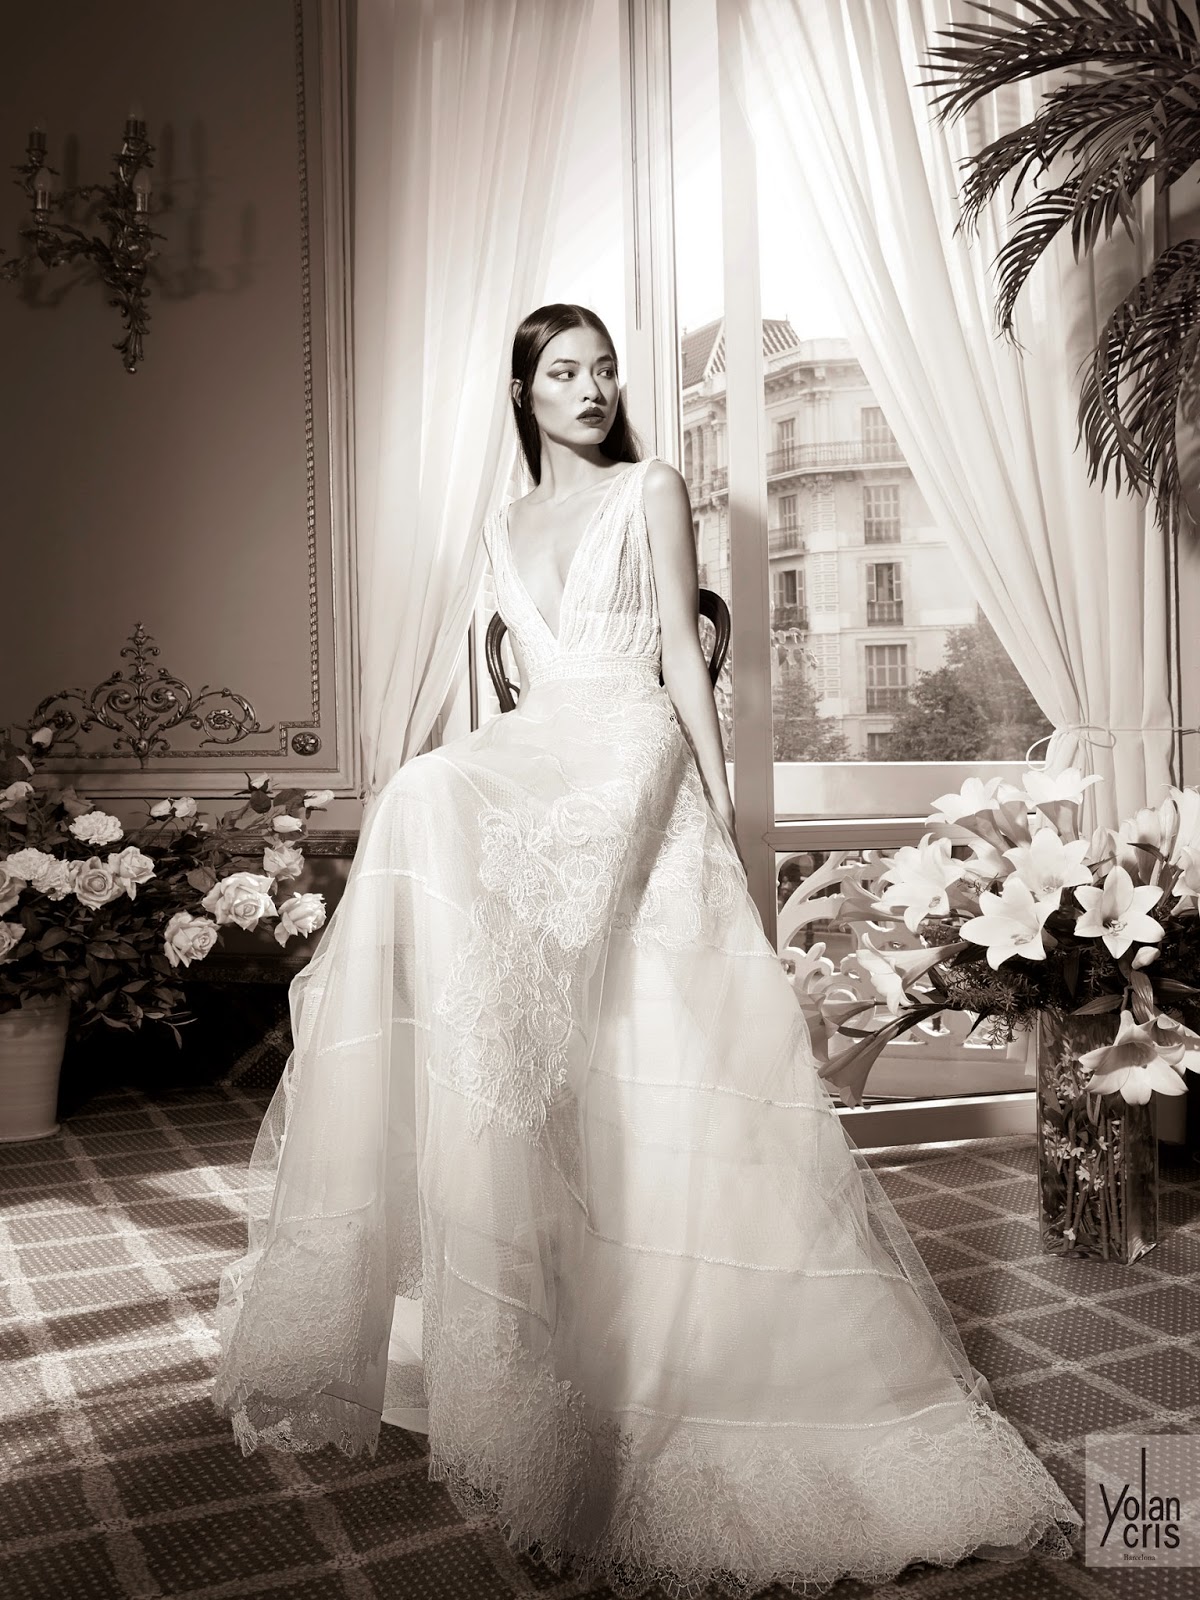 Simplificar Pero Influencia BODAS DE ALTA COSTURA: YolanCris celebra su 10º Aniversario lanzando una  colección cápsula de 7 vestidos de novia de Alta Costura